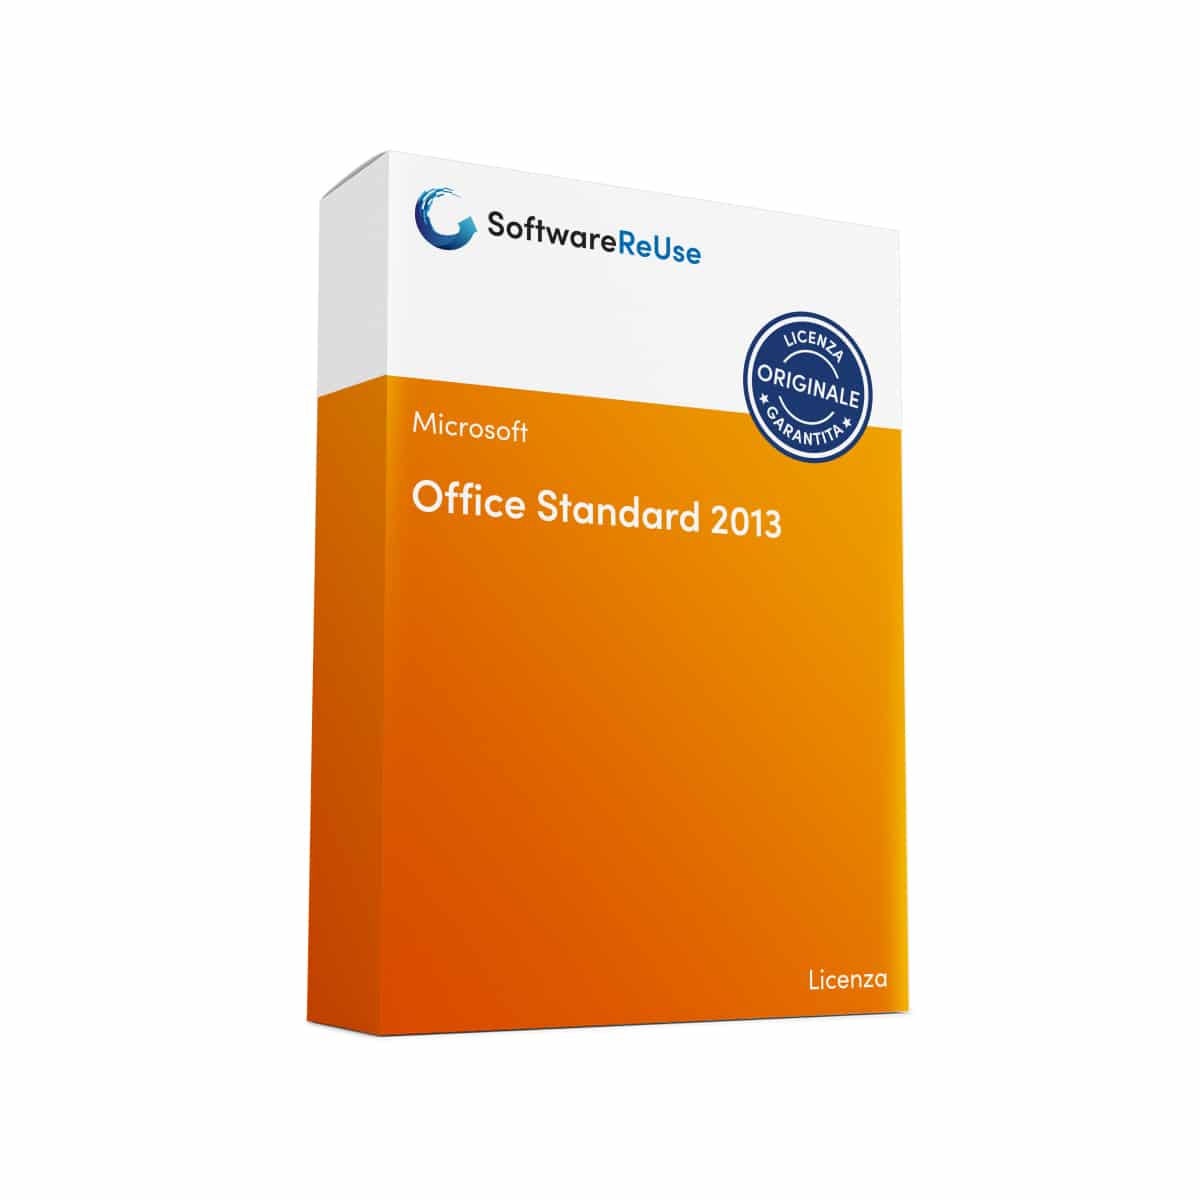 Office Standard 2013 – IT